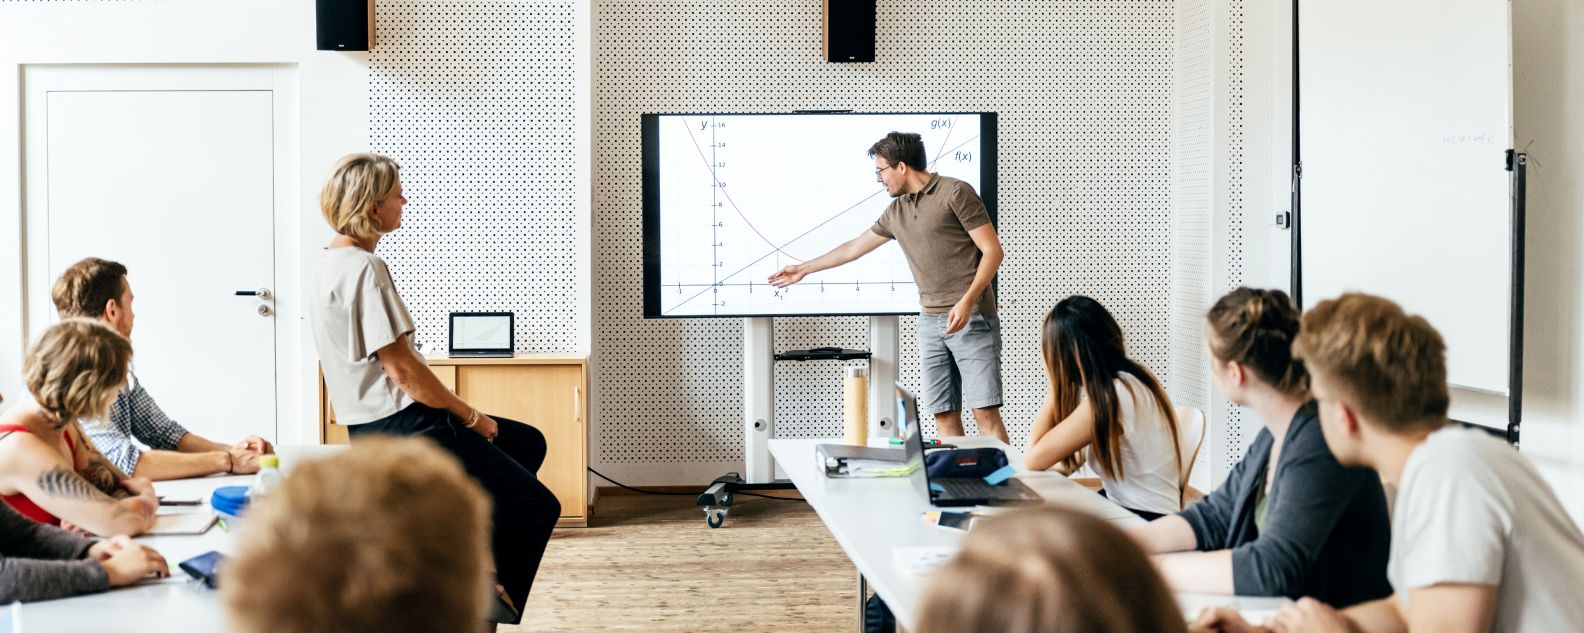 Un étudiant fait une présentation à la classe lors d'une séance de séminaire et utilise un grand écran comme support visuel.